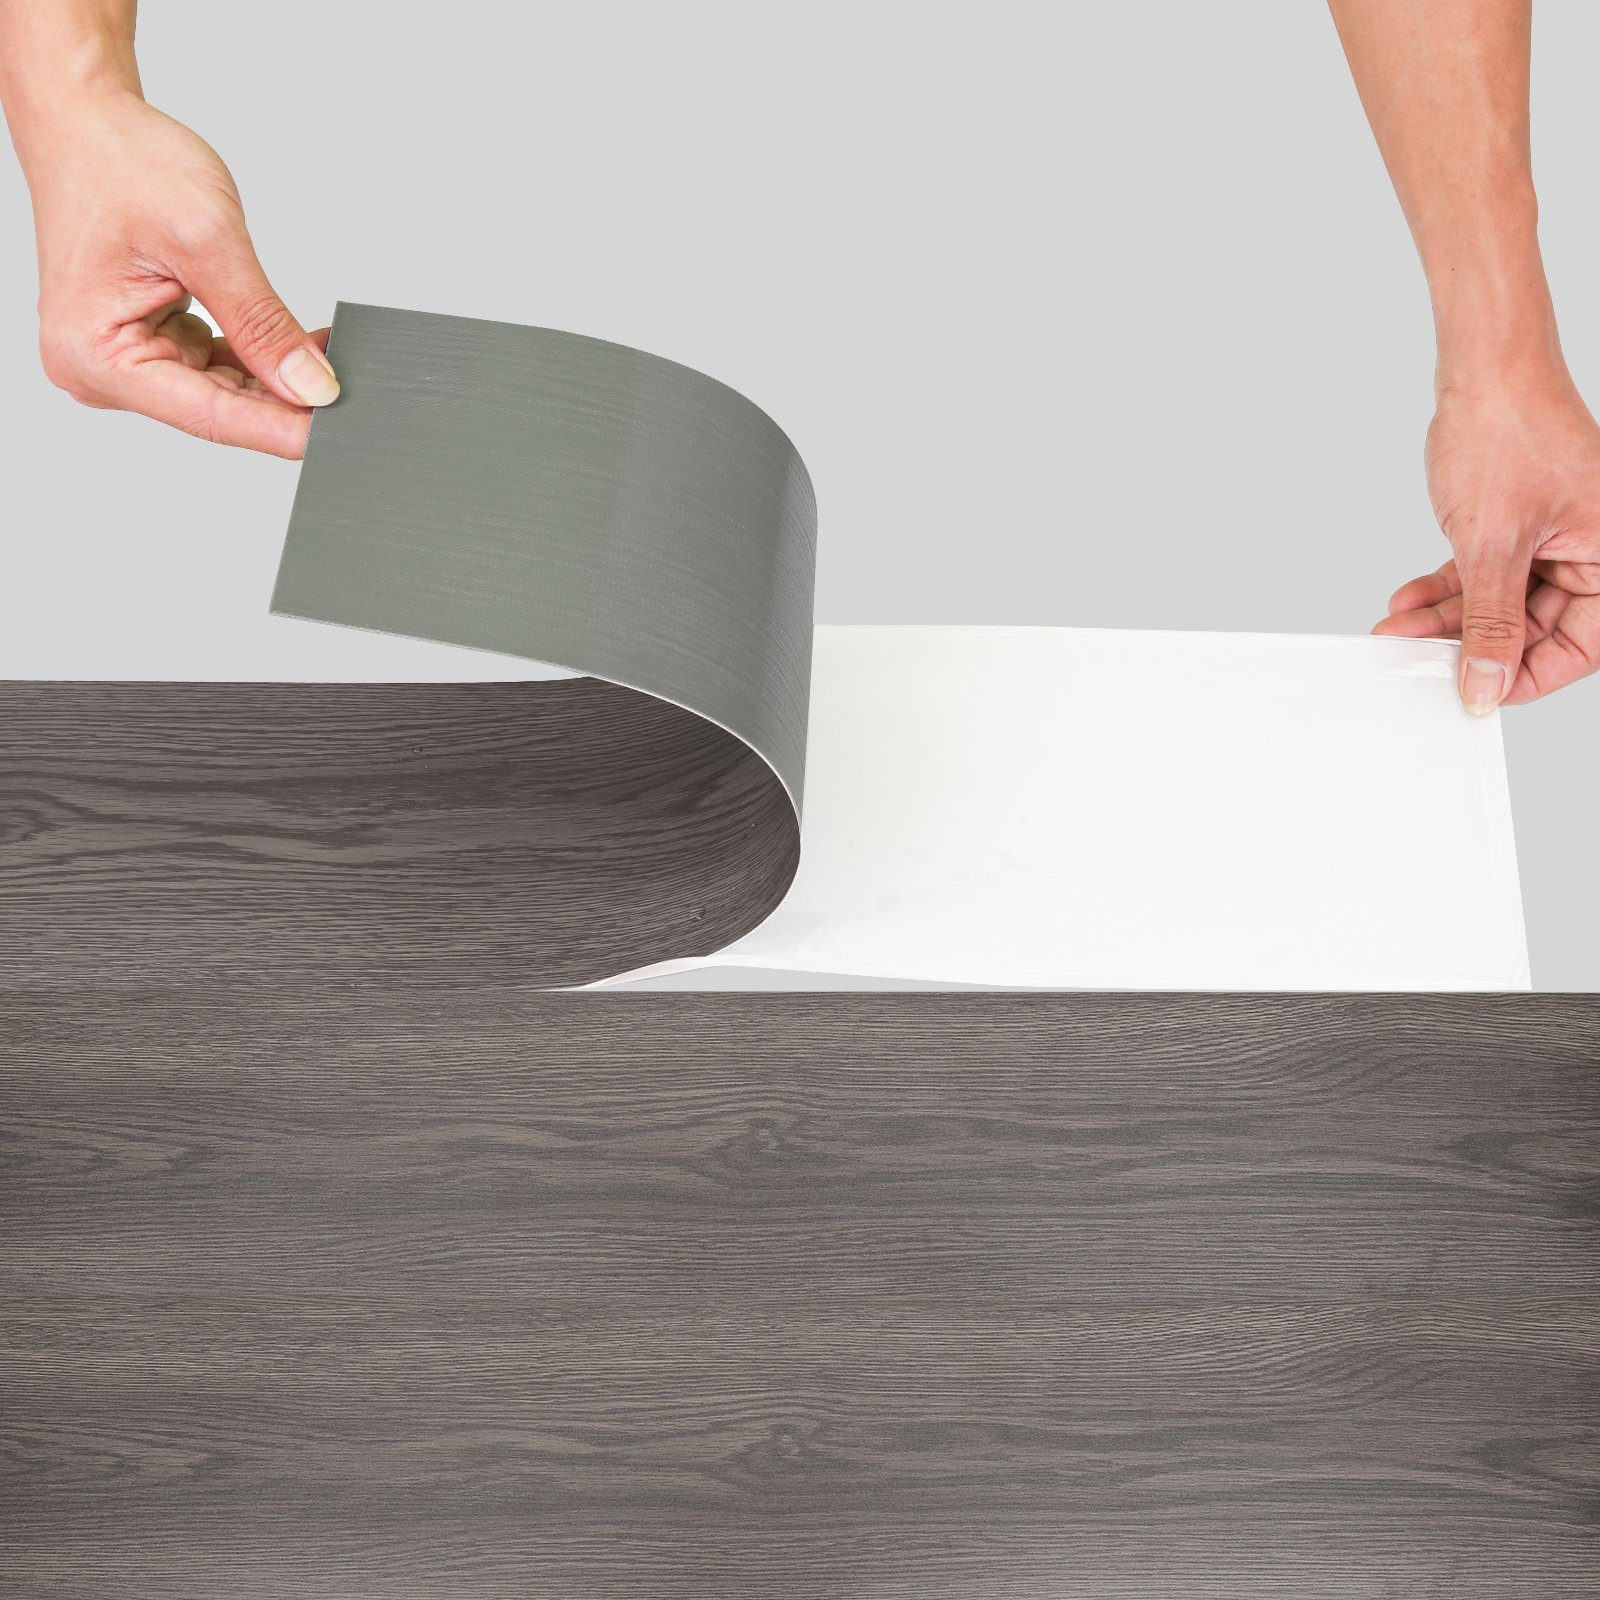 Bettizia Vinylboden Vinylboden Laminat PVC-Laminat-Dielen Selbstklebend Holzoptik Fußboden, selbstklebend